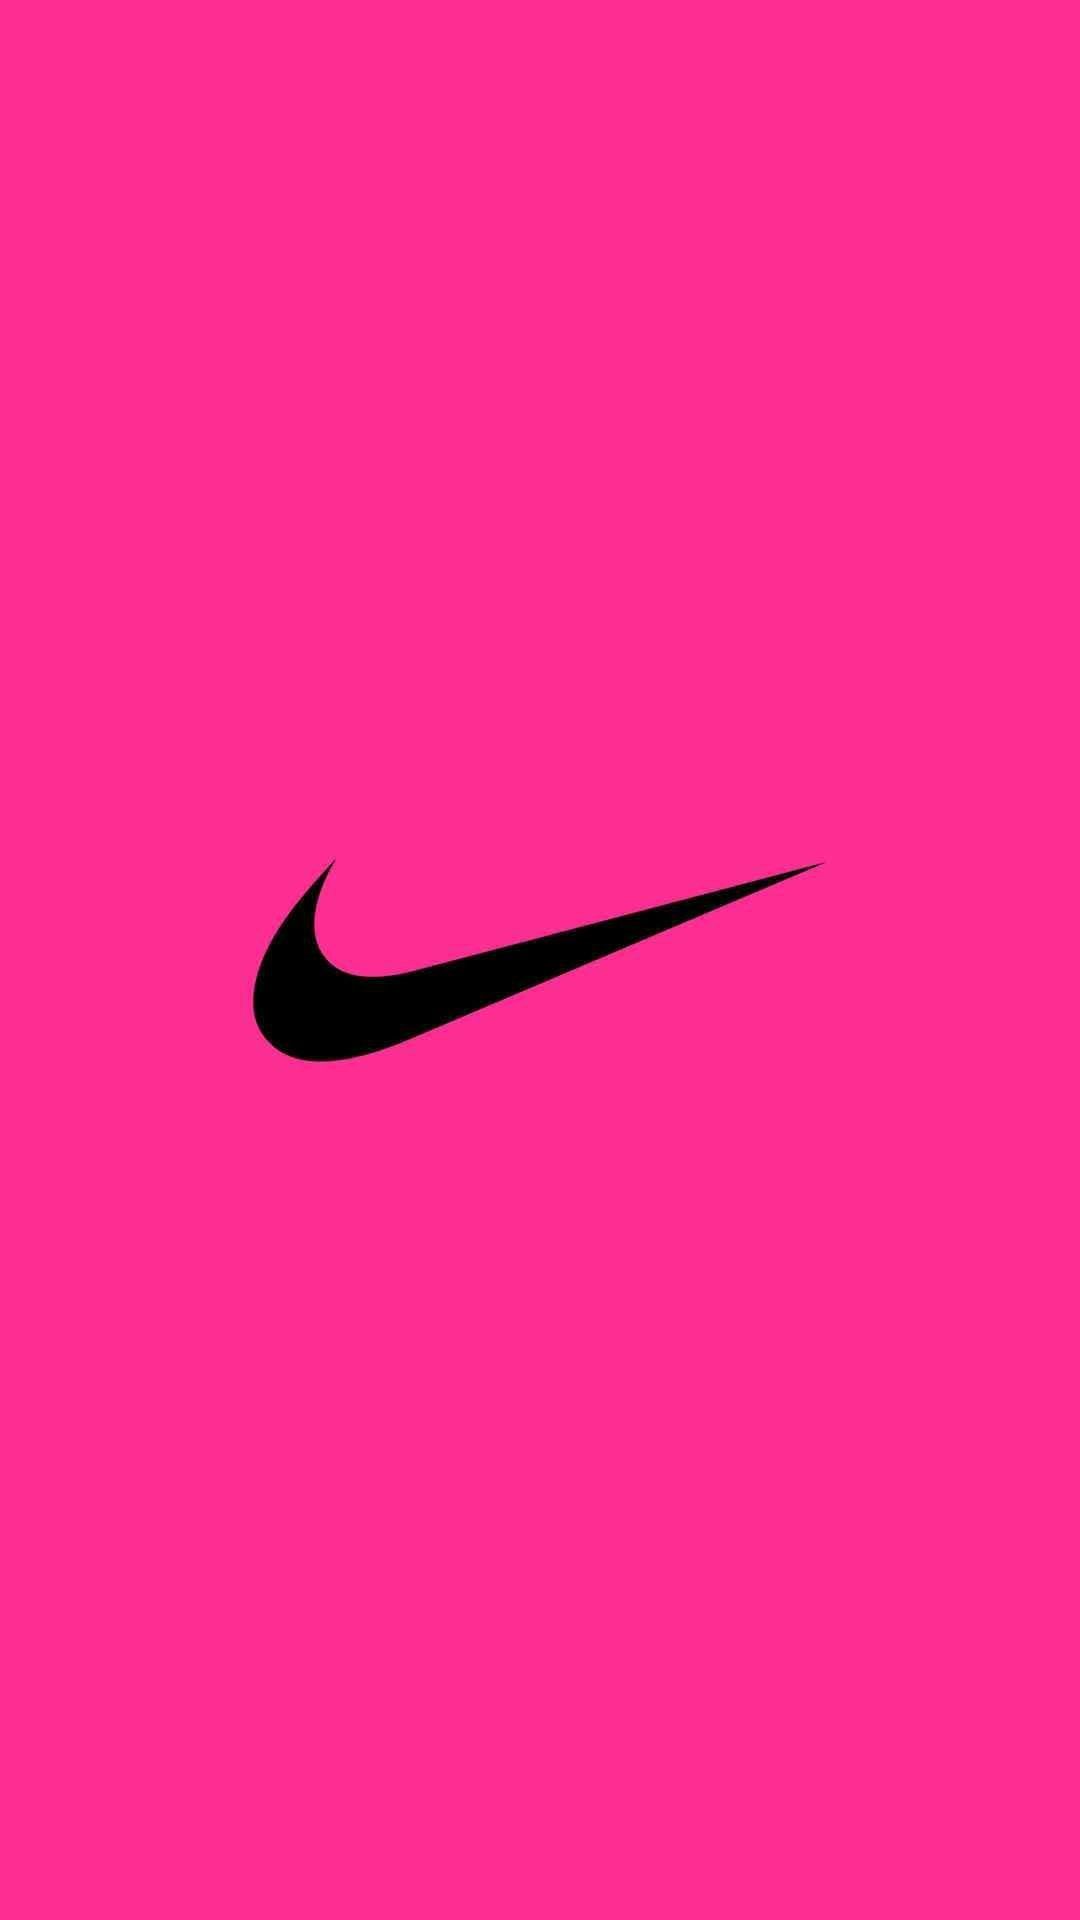 Hãy đem nét dịu dàng và cá tính của bạn lên trang phục hàng ngày! Hình nền Nike hồng sẽ mang lại sự tươi sáng và sáng tạo cho màn hình điện thoại của bạn. Cùng chiêm ngưỡng những mẫu hình nền độc đáo của Nike ngay thôi nào!